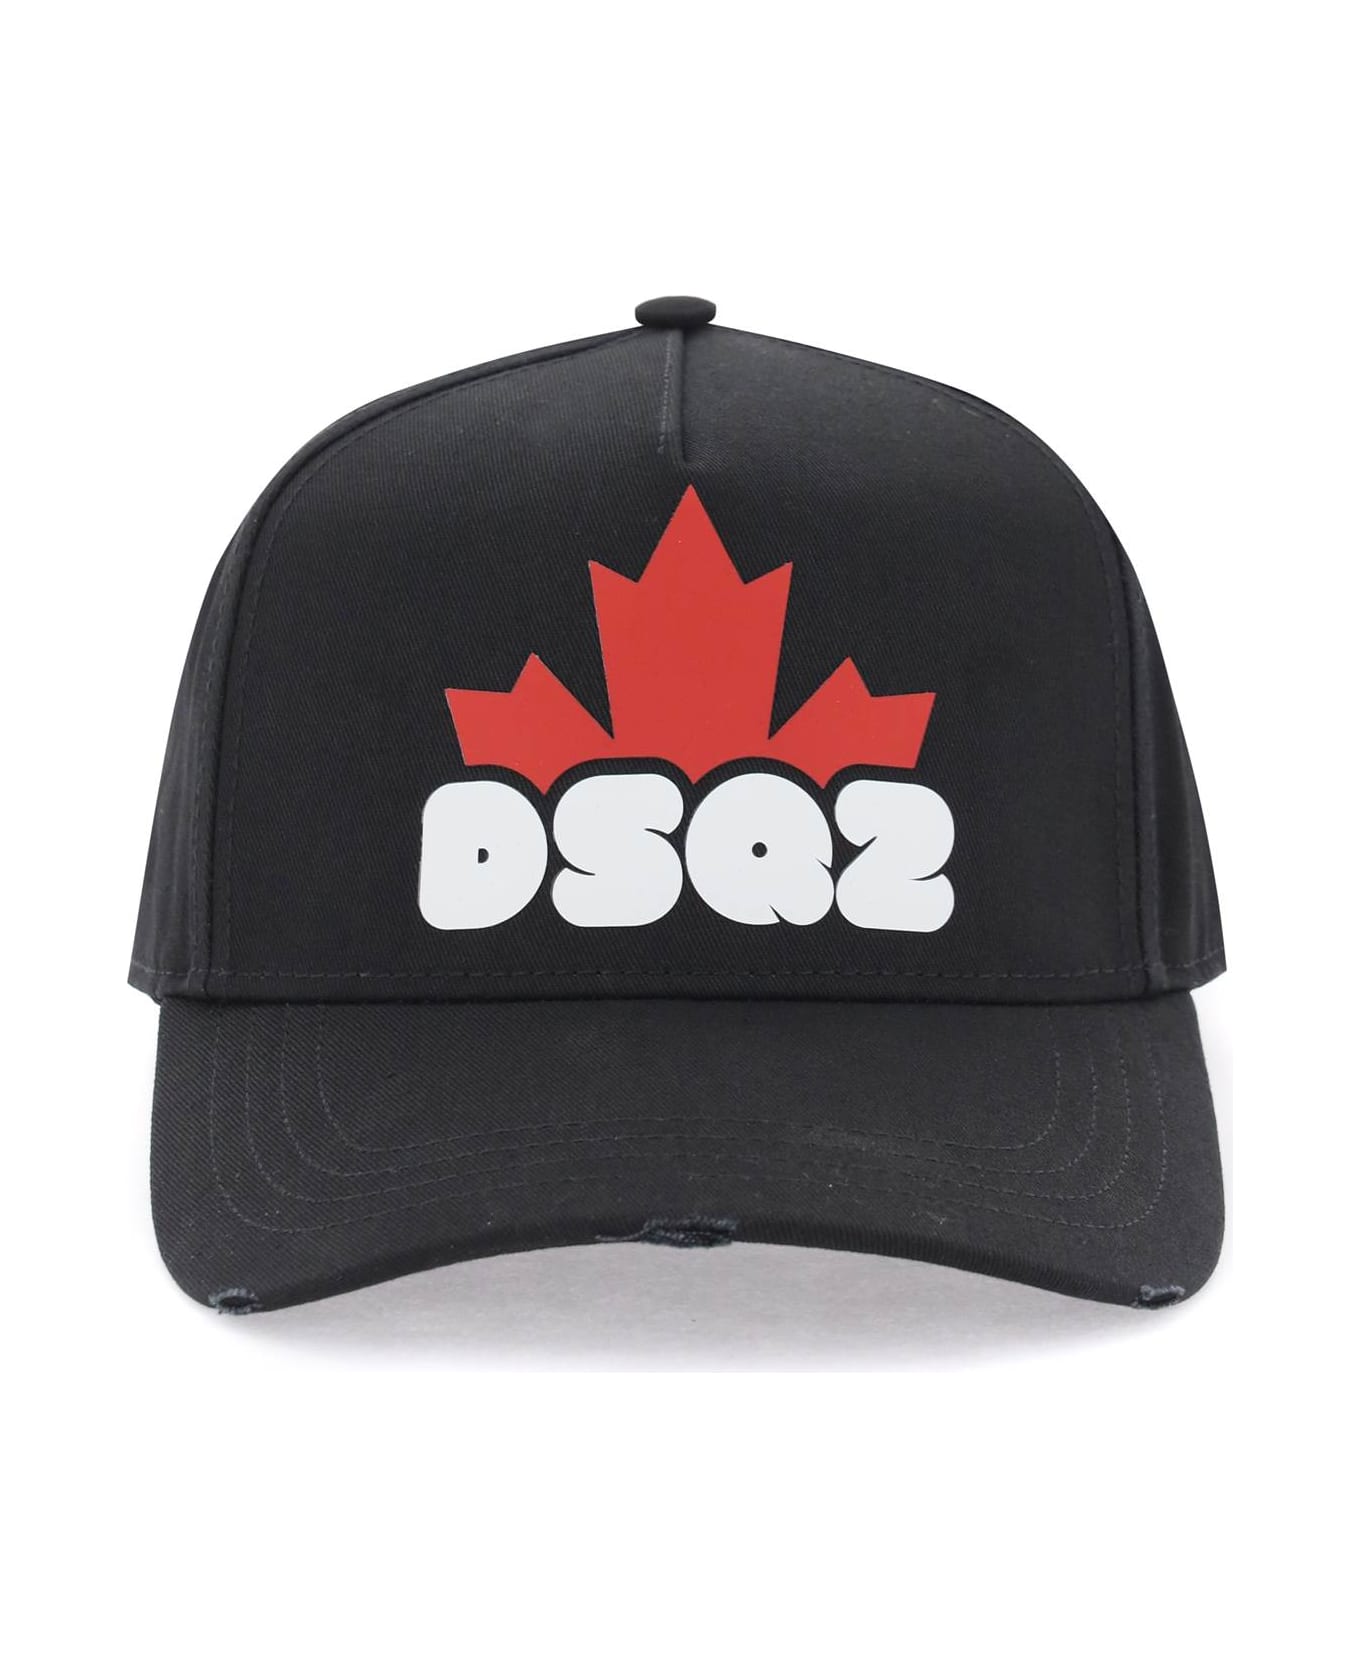 Dsquared2 Dsq2 Baseball Cap - BLACK (Black)